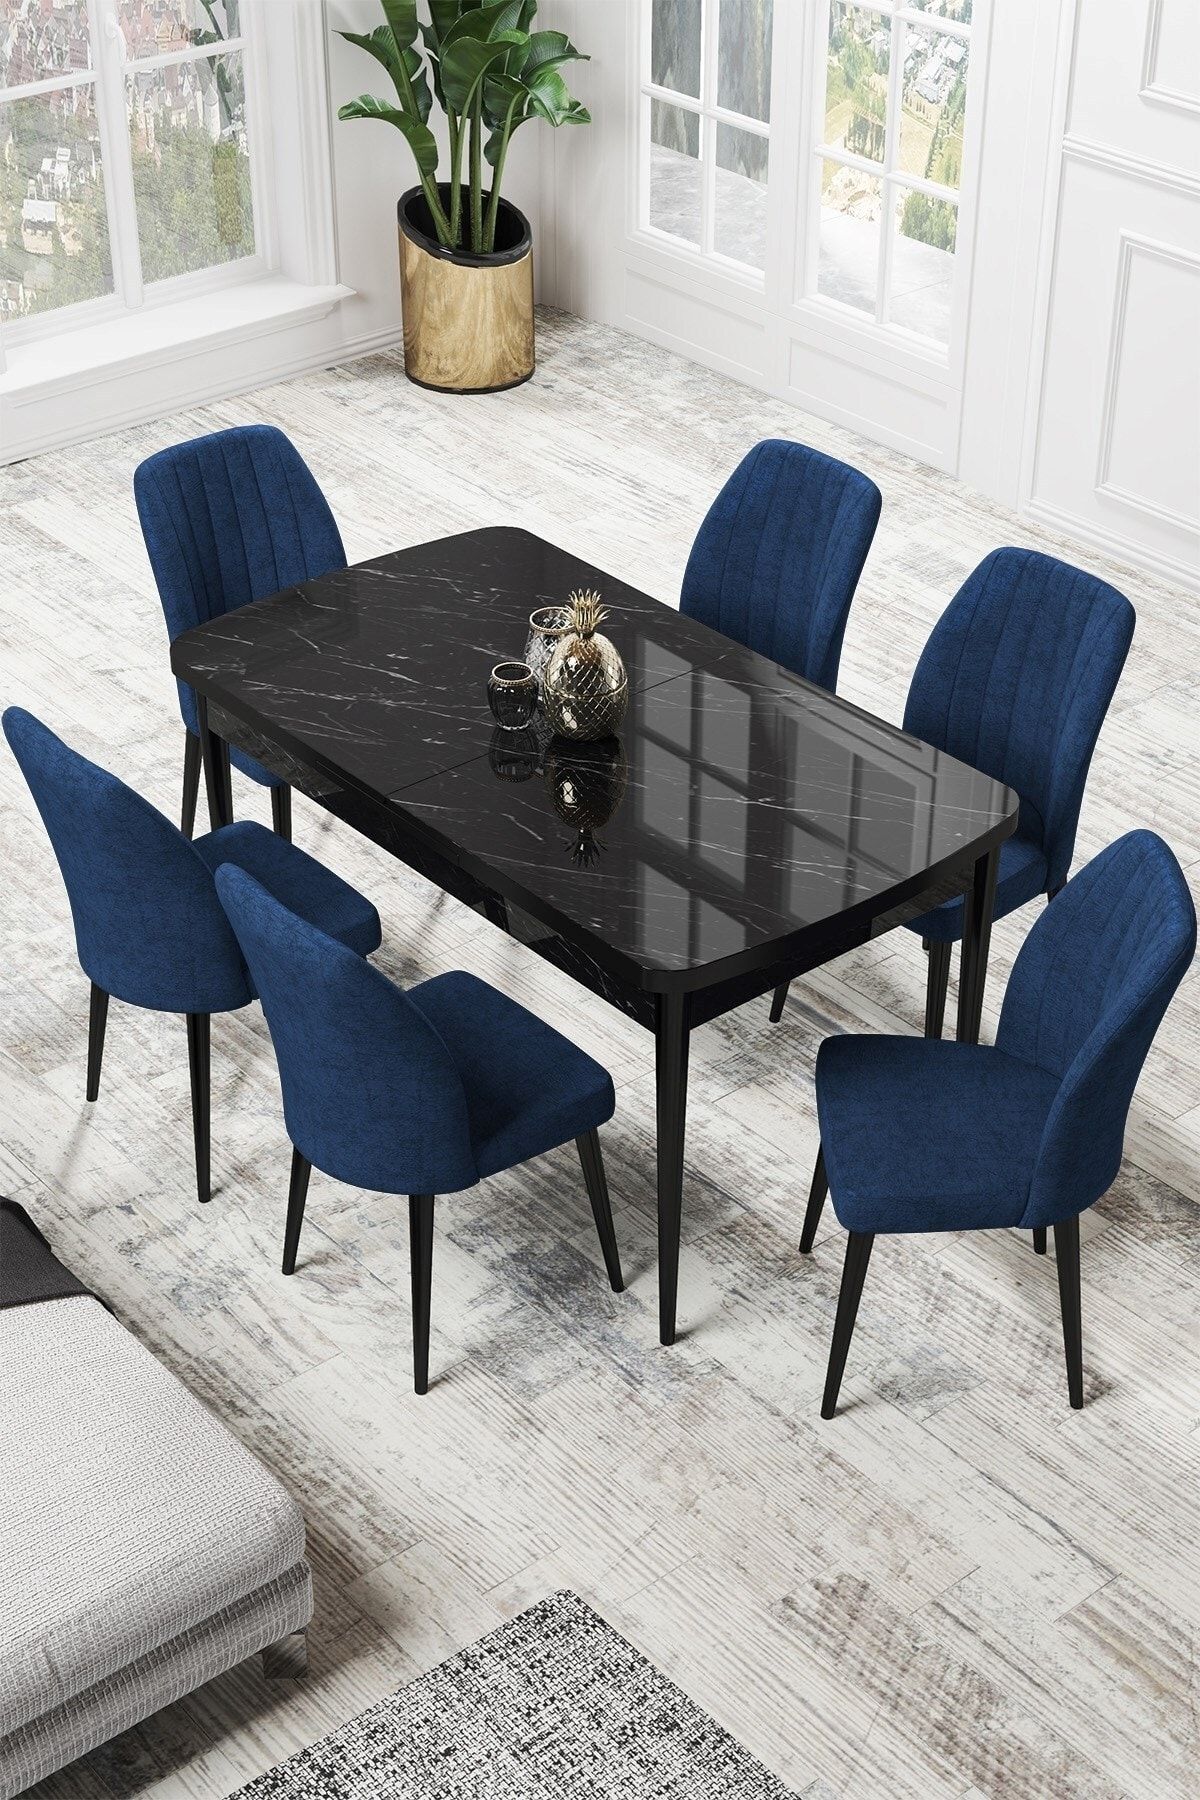 Canisa Par Serisi 70x114 Açılabilir Mdf Mutfak Masası Siyah Mermer Desen Masa Ve 6 Lacivert Sandalye Takımı